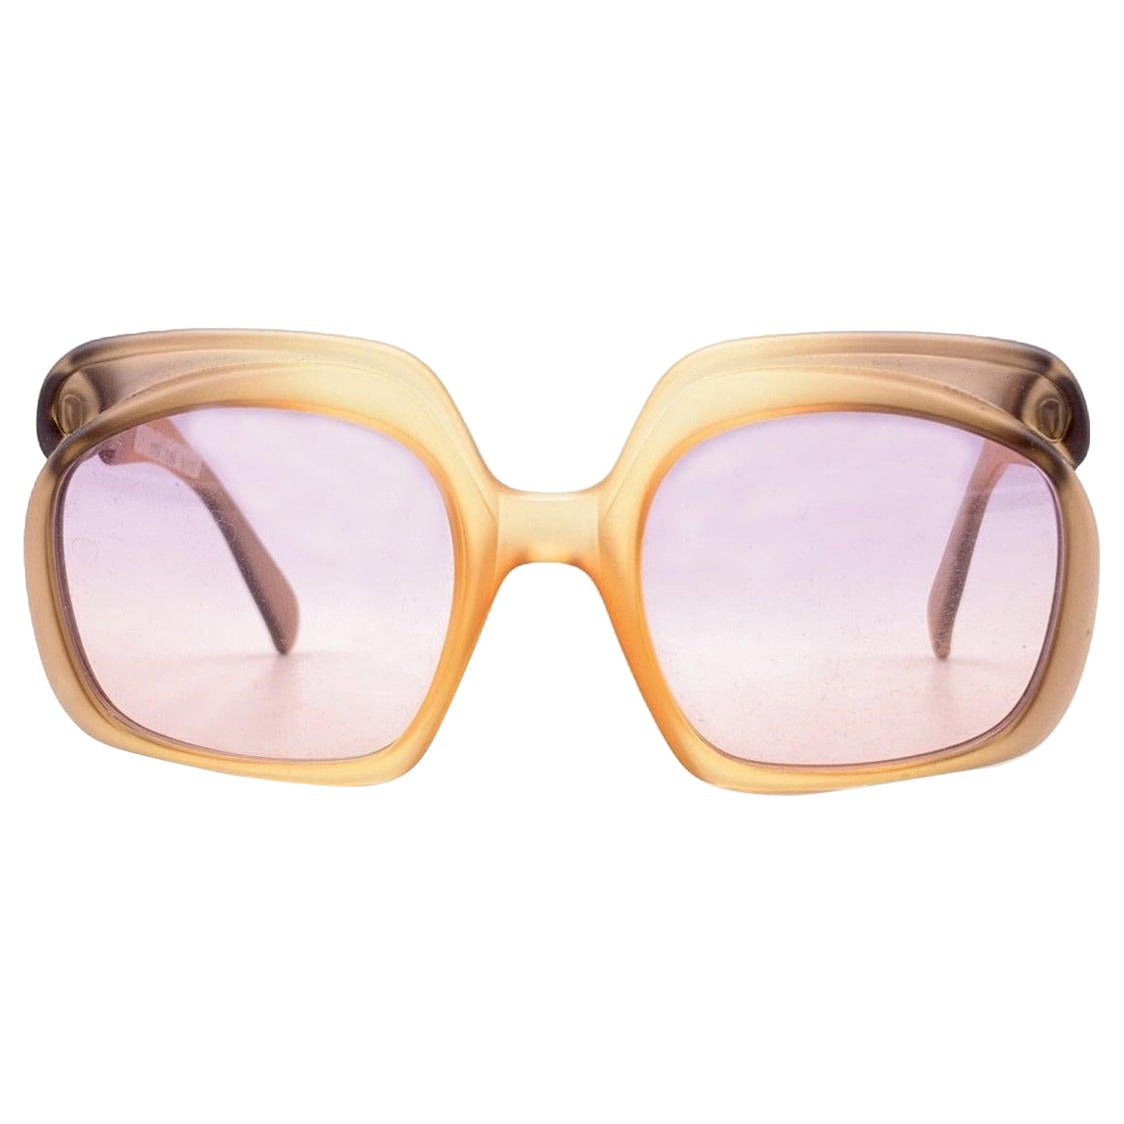 Christian Dior Vintage Sunglasses 2009 368 Light Pink Lens 52/22 135mm For Sale